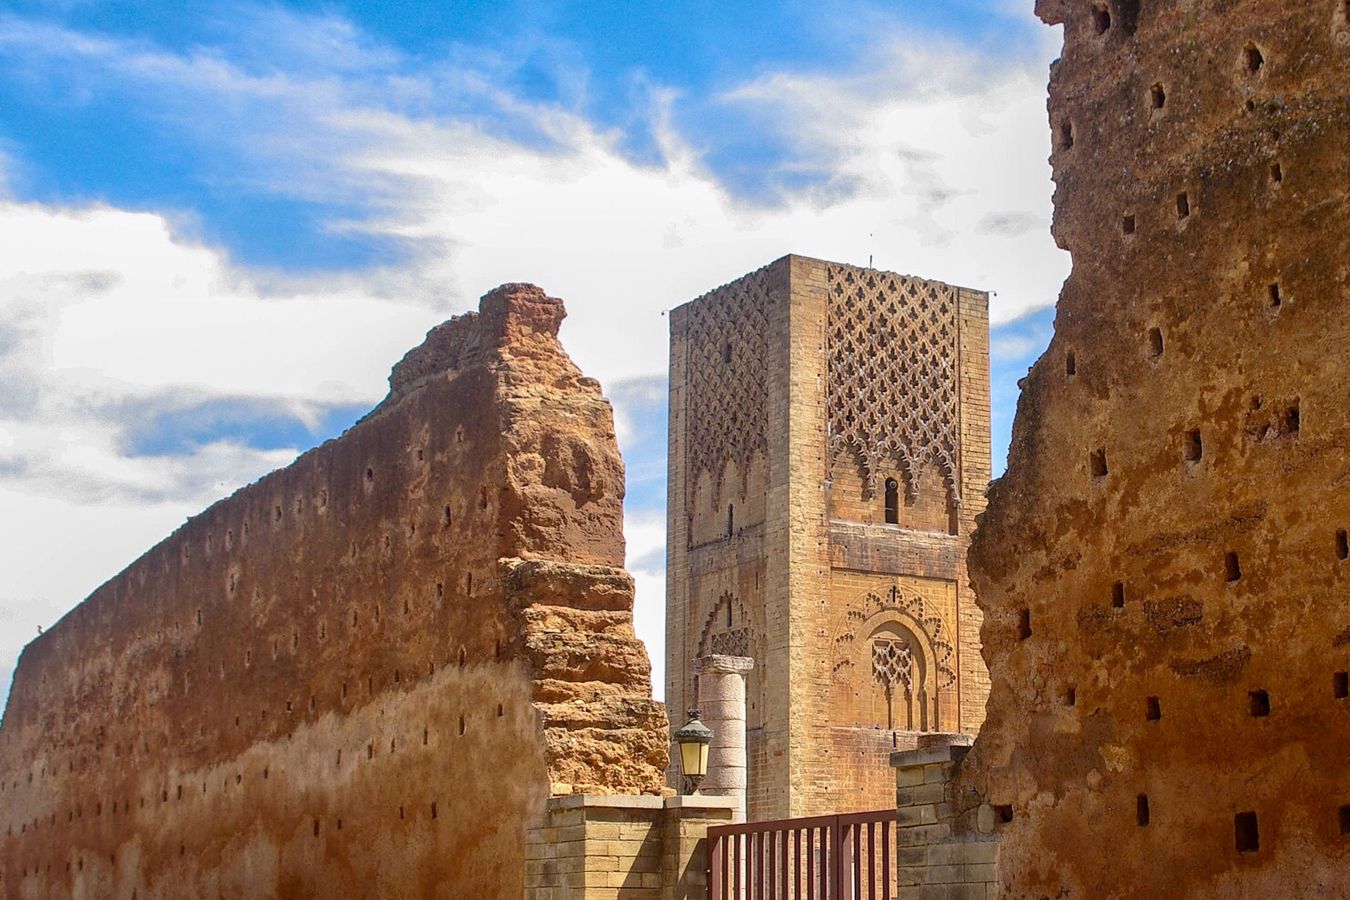 Rabat. Marruecos. The Best Morocco.